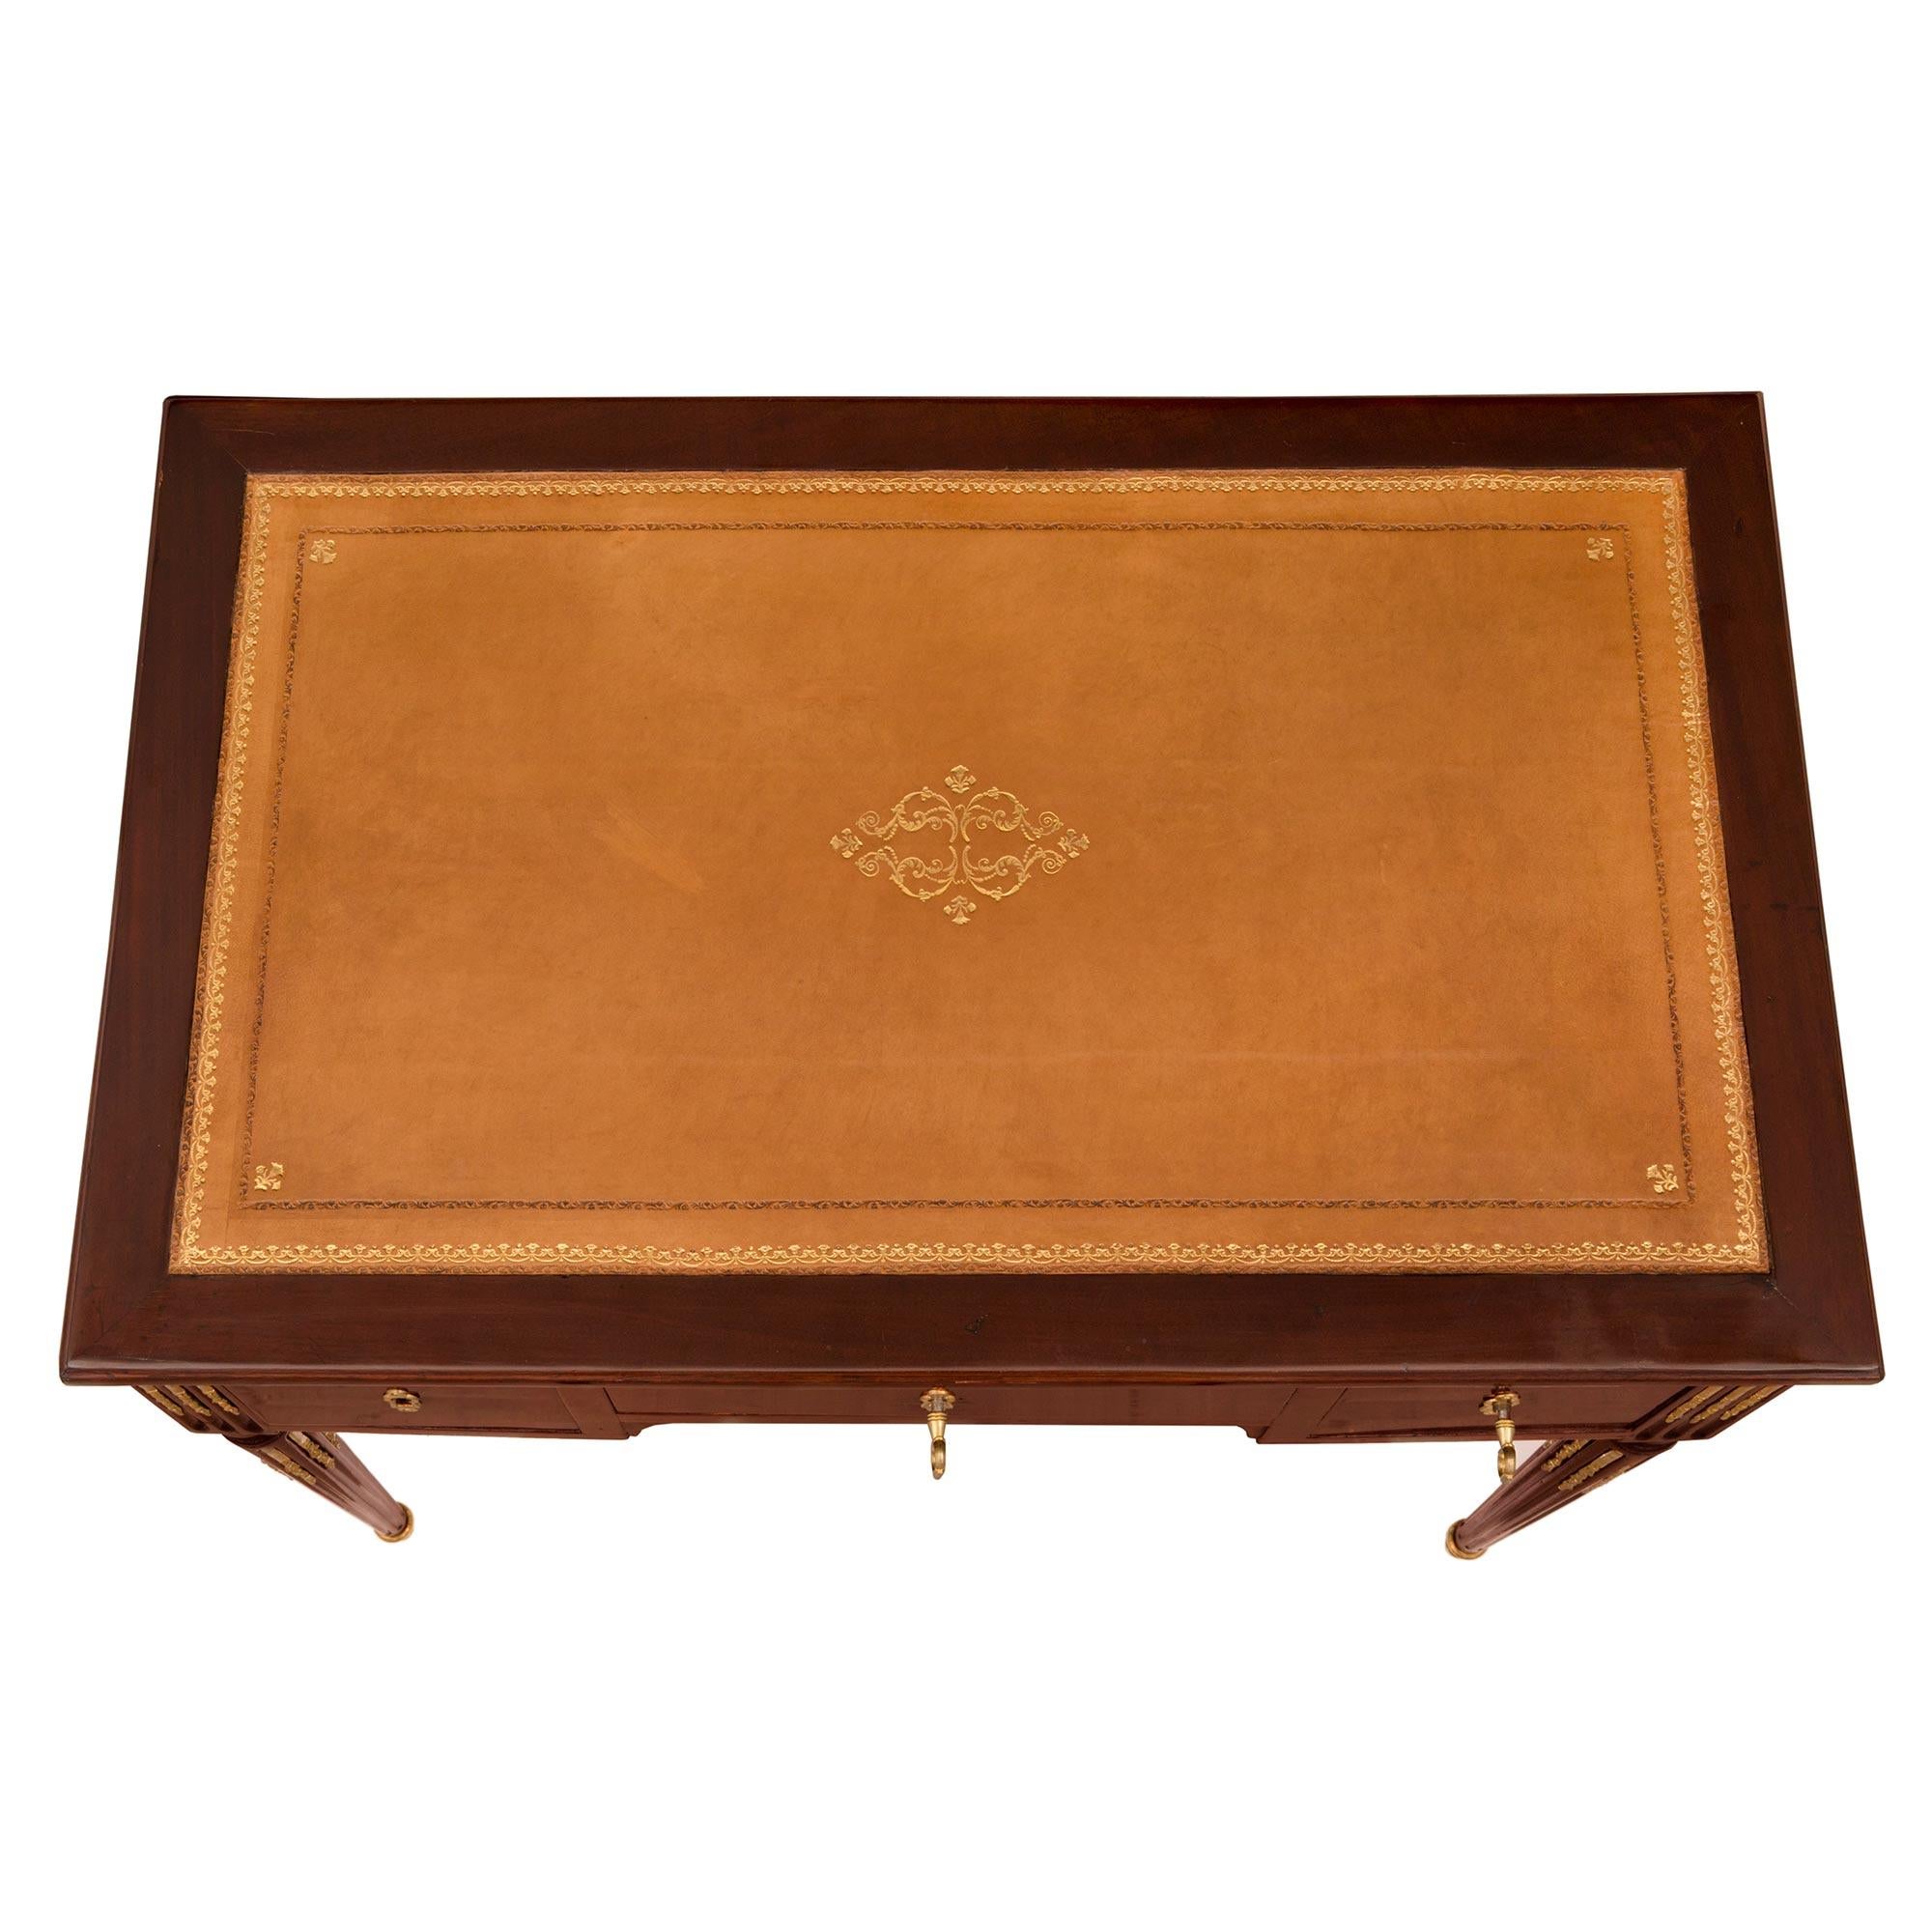 Bureau ou table à écrire de très haute qualité, d'époque Louis XVI, en acajou et bronze doré, signé C. Mauter. Le bureau est surélevé par d'élégants pieds circulaires fuselés et cannelés, dotés de sabots en bronze doré et de chandelles feuillagées